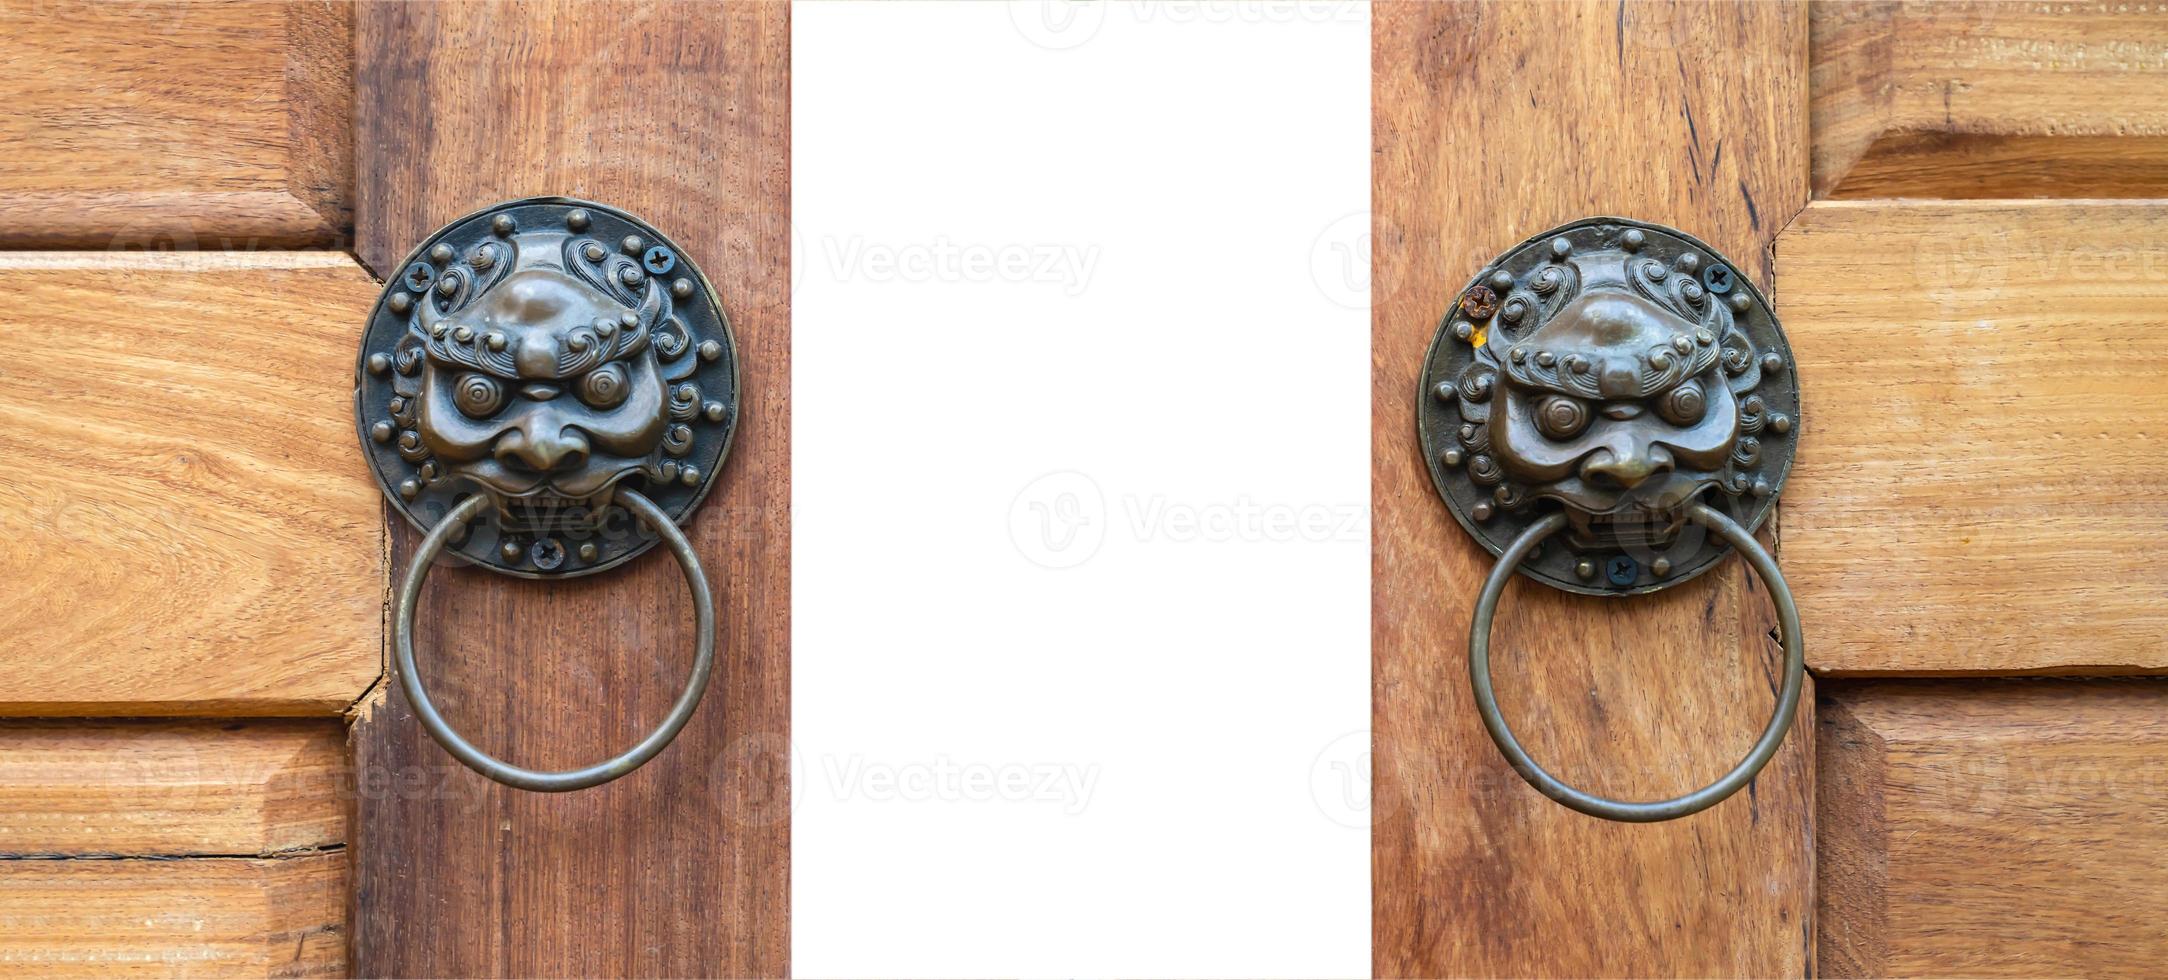 gros plan sur l'asie, chine bronze - style lion jumeau en métal la porte en bois frappée est coulissante ouverte avec un fond blanc uni. chemin de détourage. photo